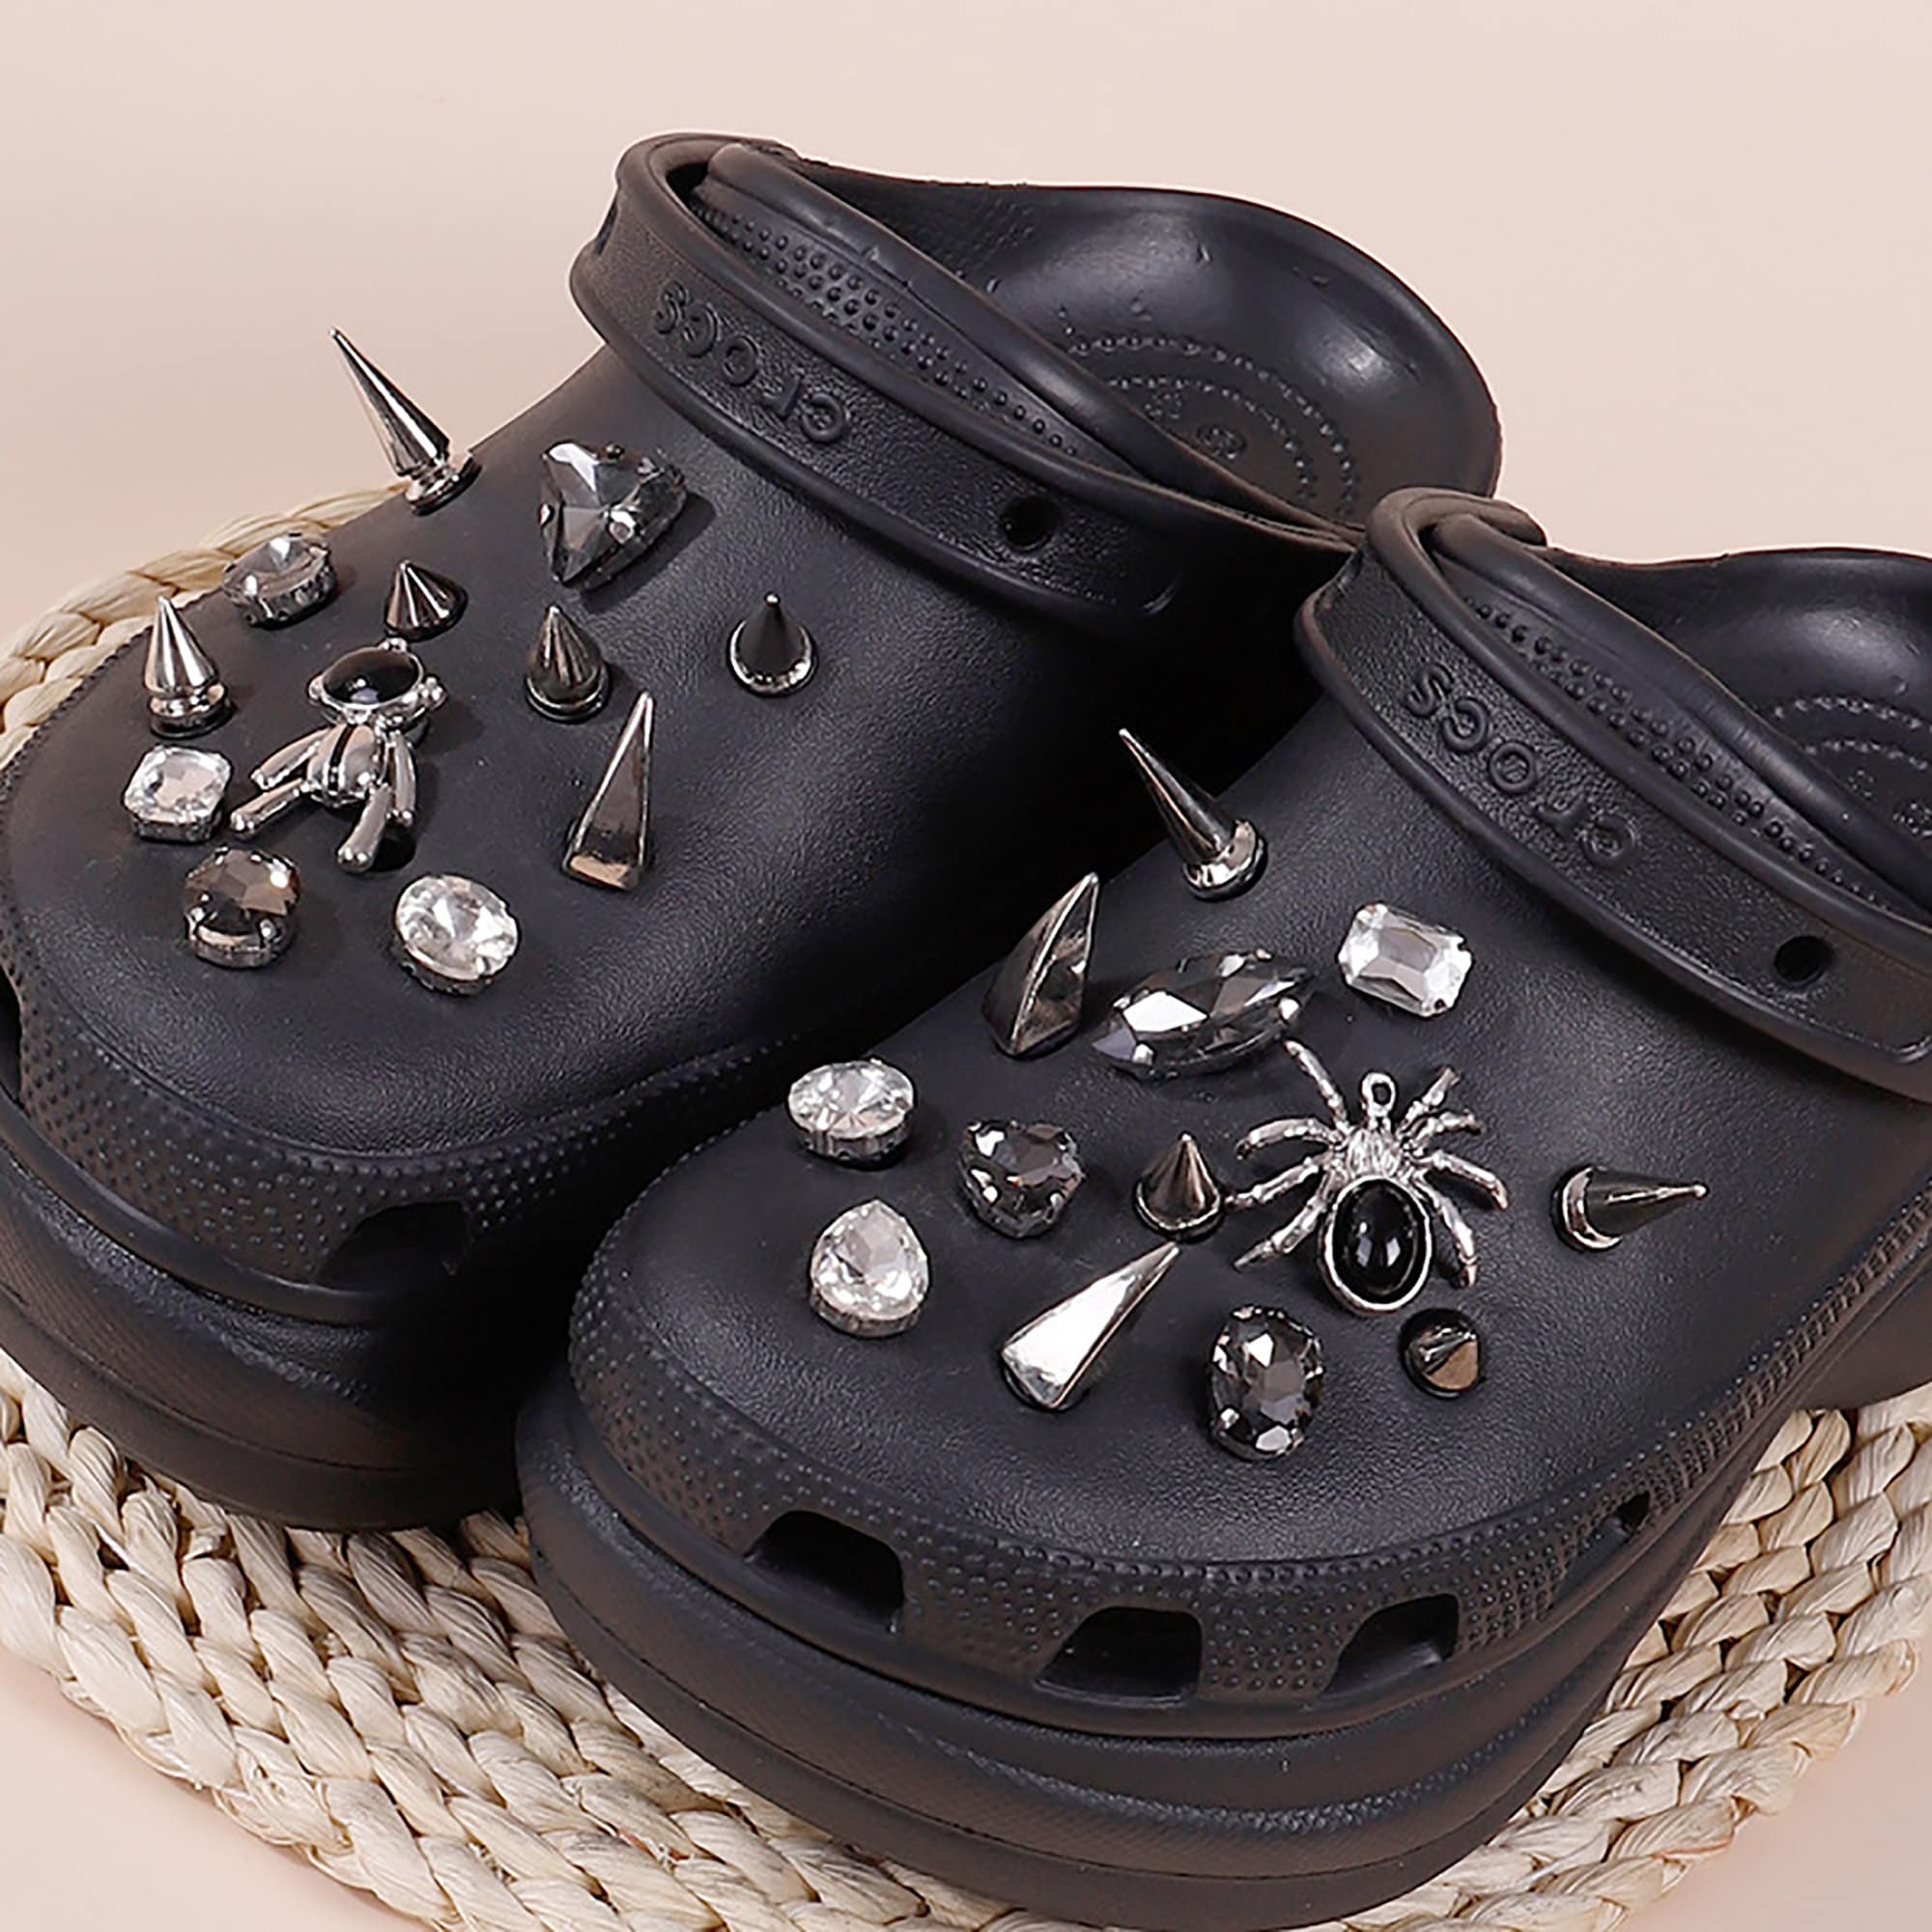 Hot Sale 1pcs Croc Charms Metal Rivet Decoration Punk Spikes Studded  Designer Shoe Charm for Croc